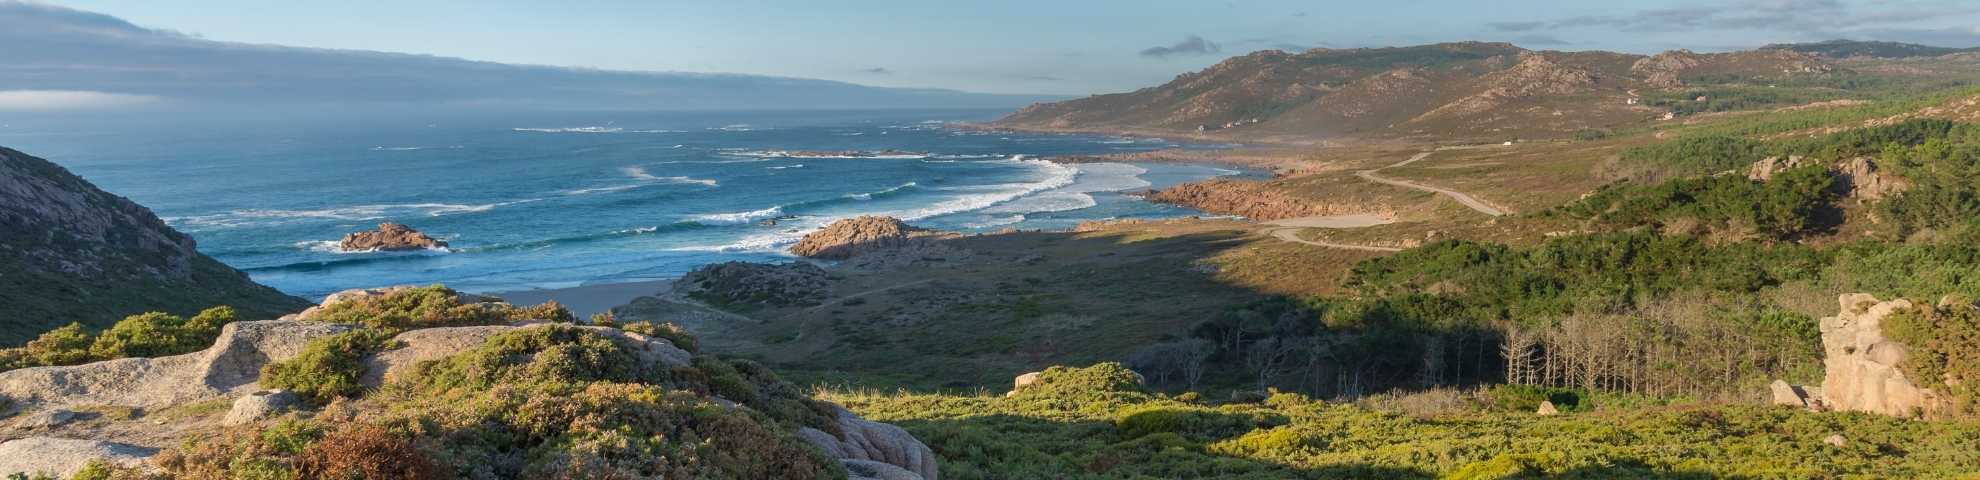 Cape Vilan de Arou to Camariñas